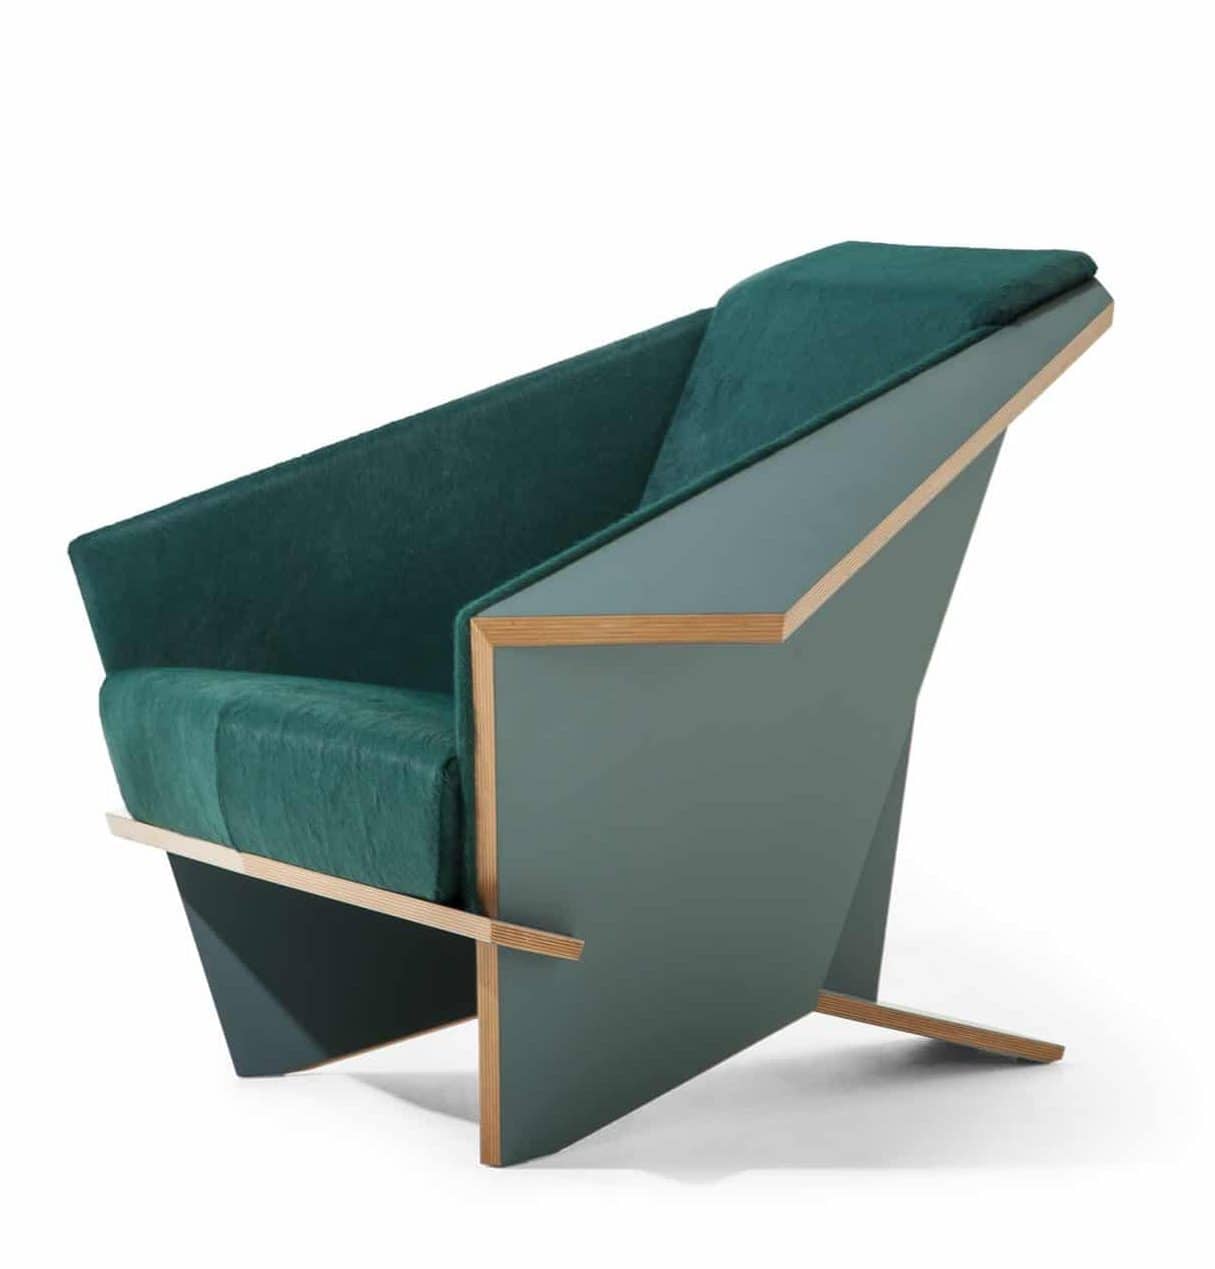 La chaise Taliesin Origami de Frank Lloyd Wright, 1949 : une chaise vert-bleu avec un accent beige le long du bord.